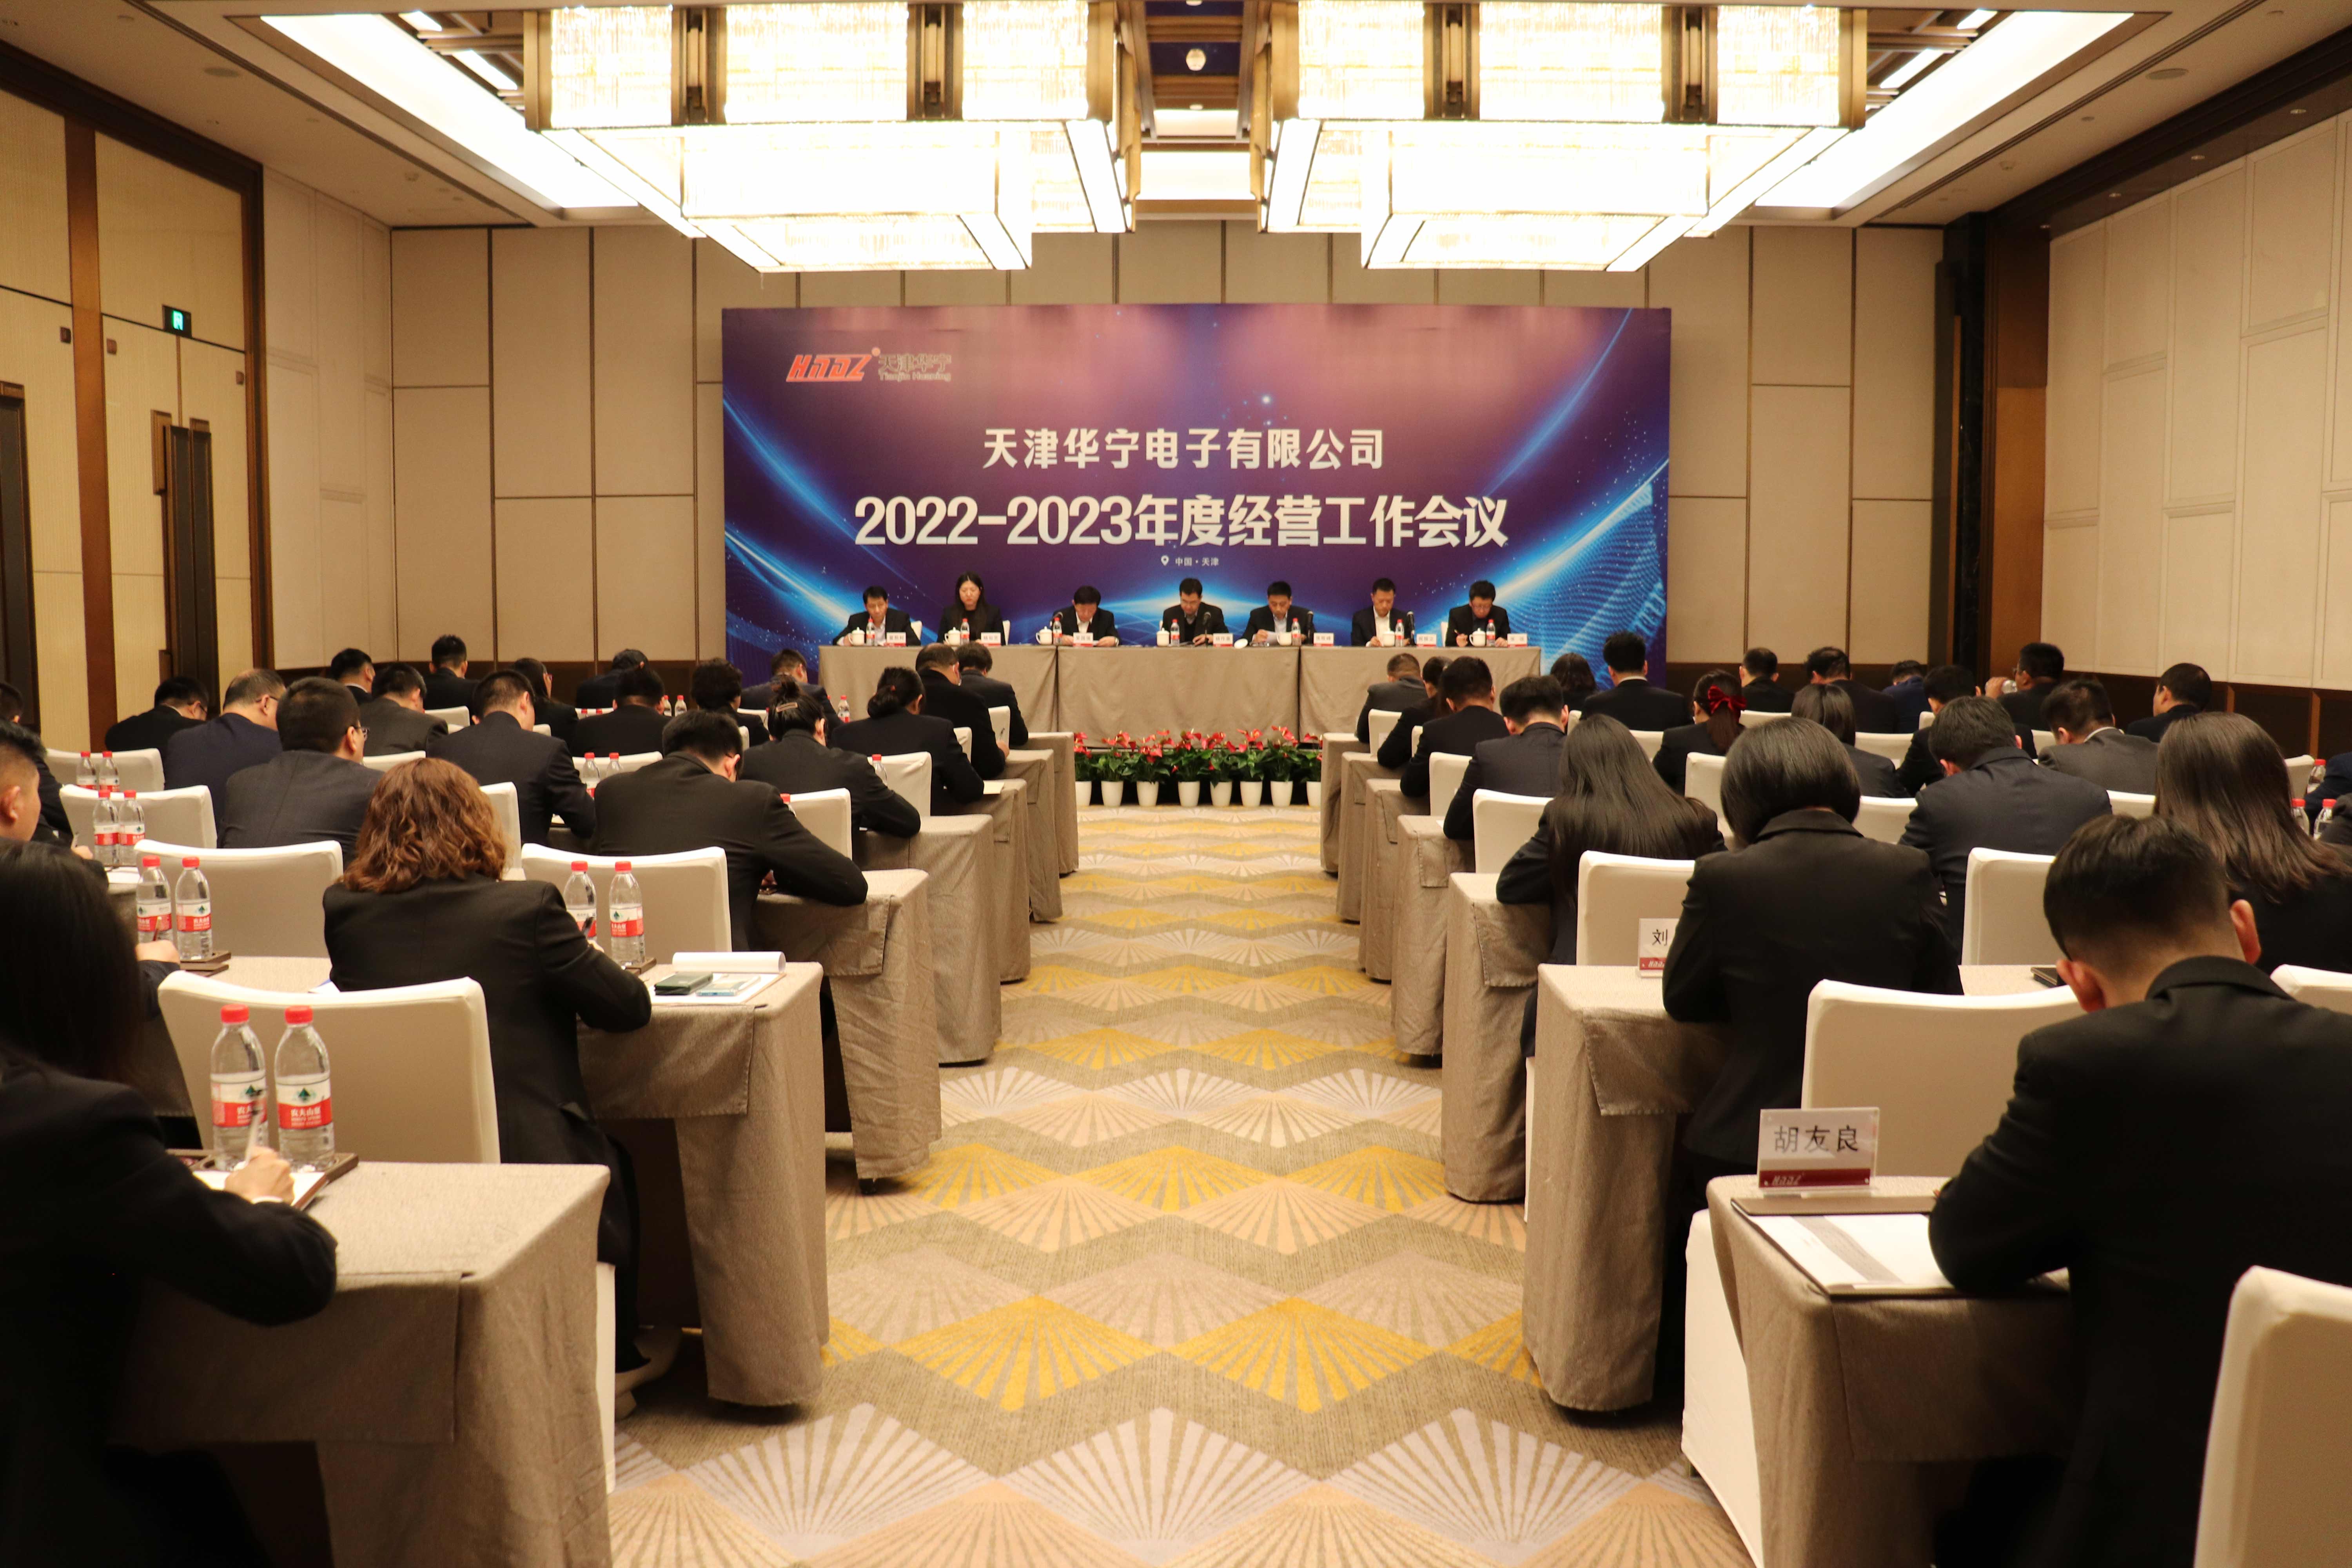 2022-2023年度經營工作會議